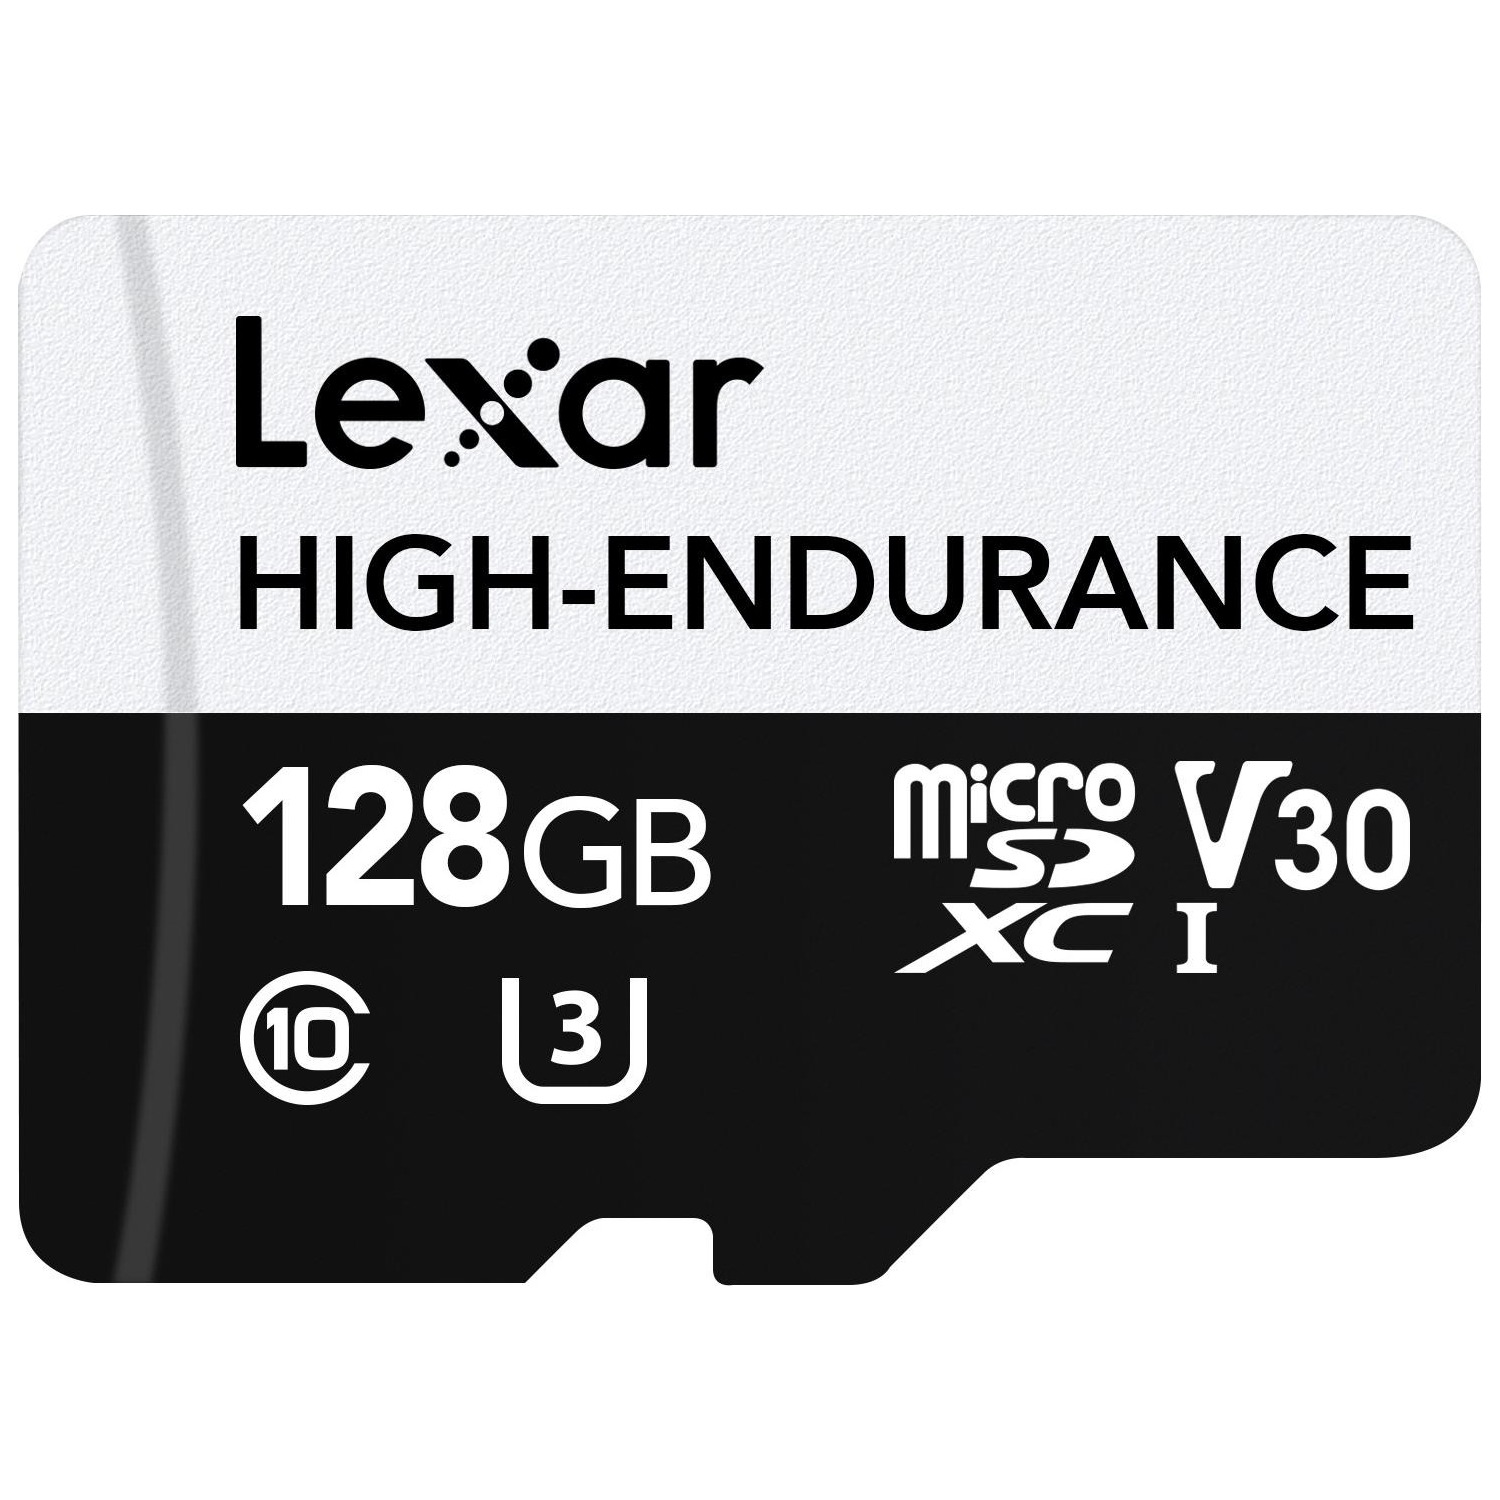 Immagine per MicroSD Lexar 128GB High-Endurance da DIMOStore